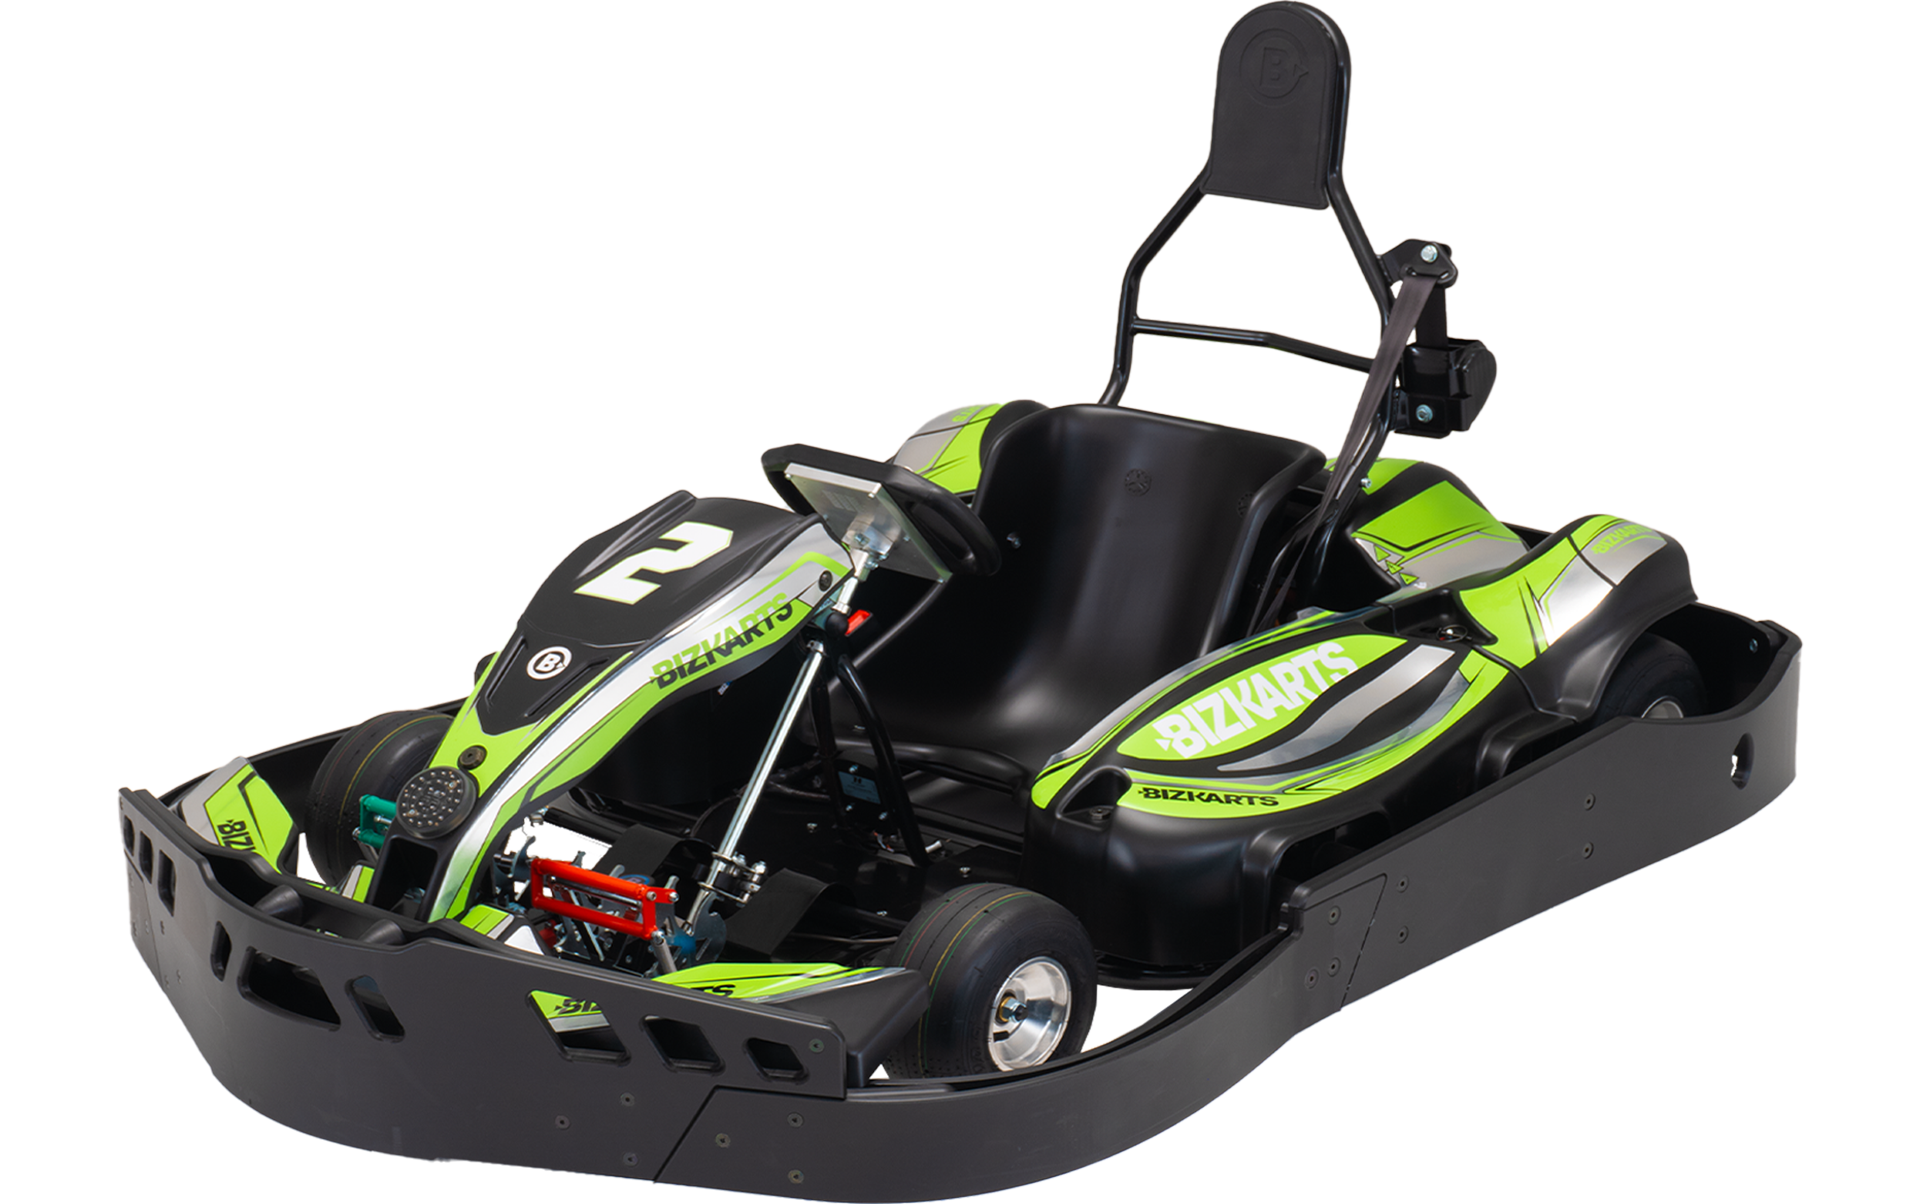 The OTL Superleggero Go Kart - For Commercial / Rental Use